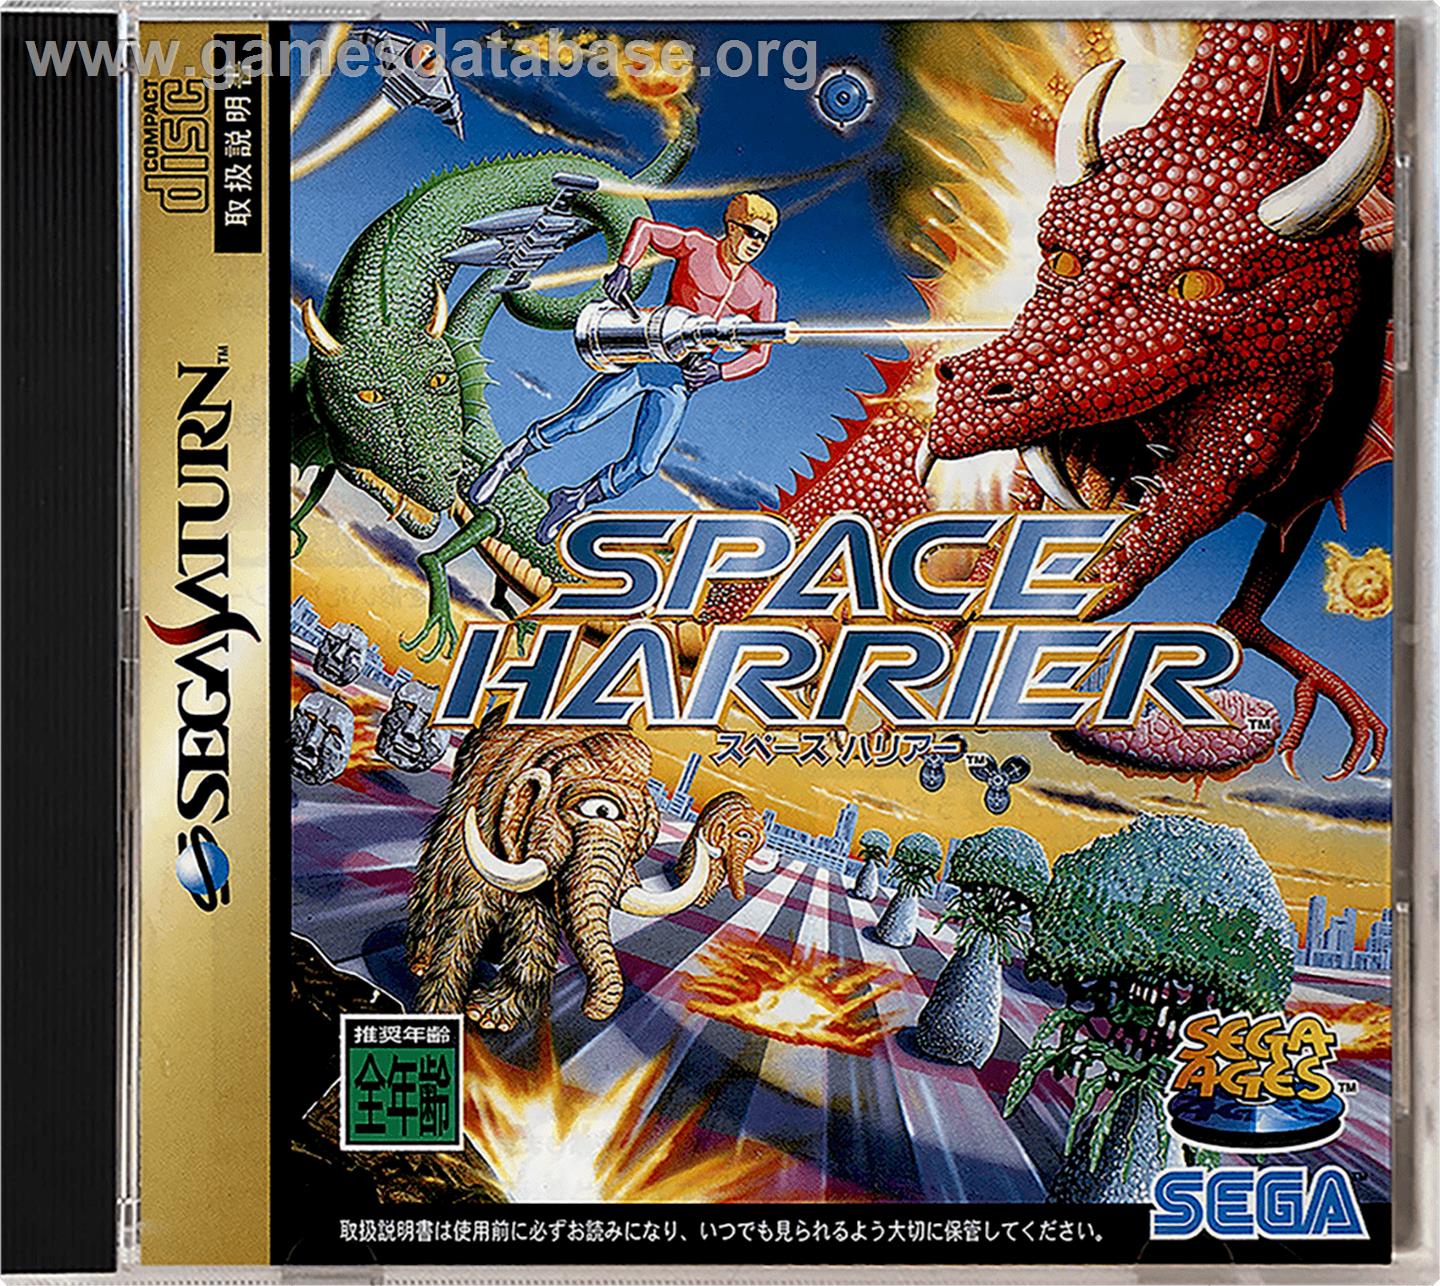 Space Harrier - Sega Saturn - Artwork - Box